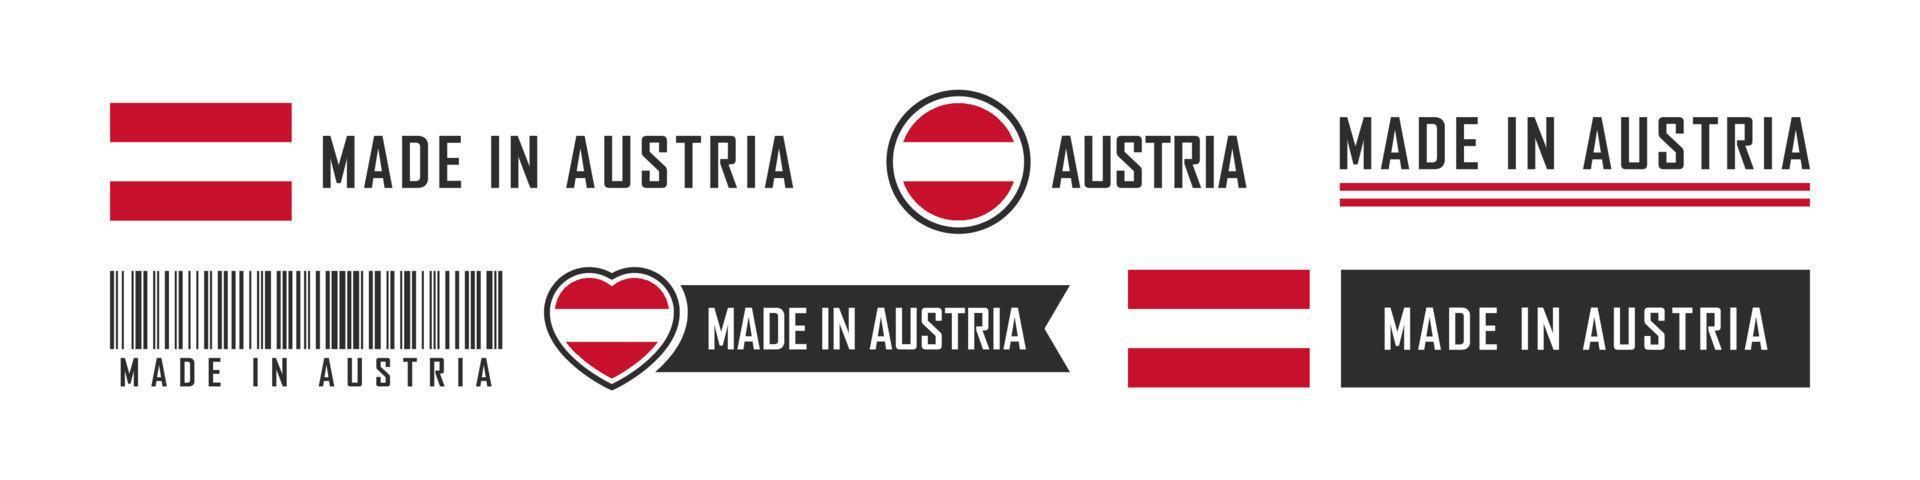 logo ou étiquettes fabriqués en autriche. emblèmes de produits autrichiens. illustration vectorielle vecteur